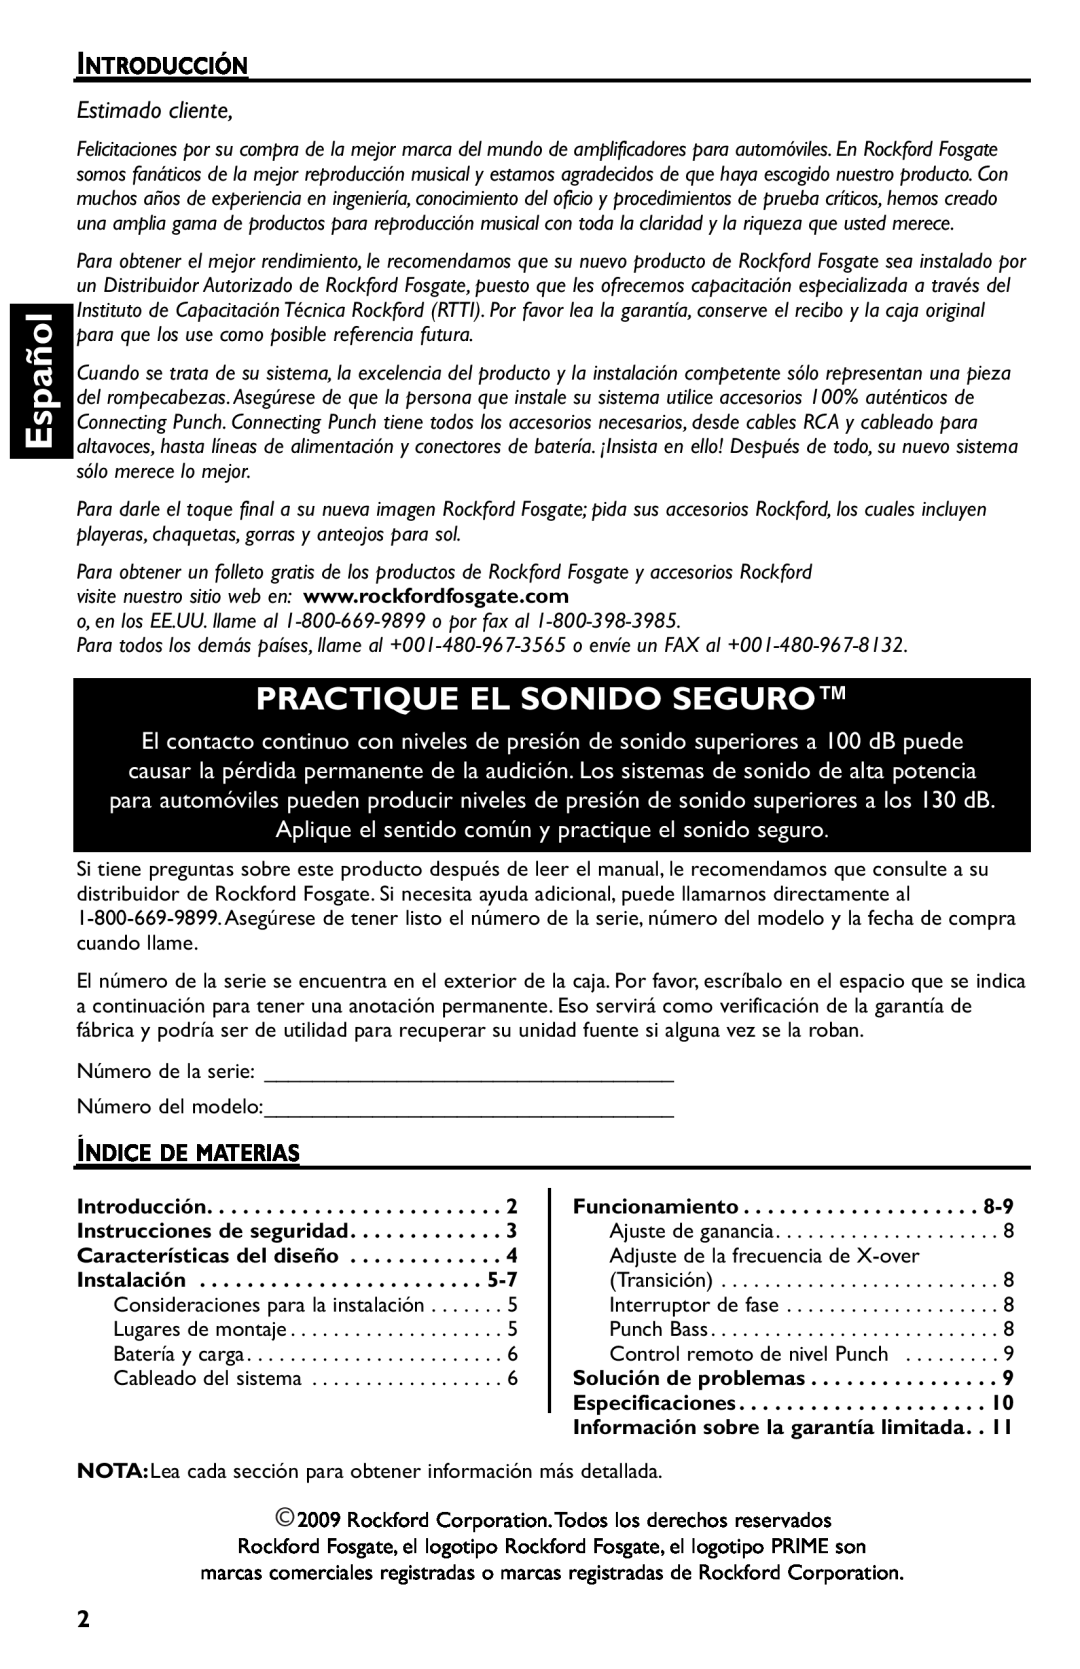 Rockford Fosgate R500-1 manual Español, Practique El Sonido Seguro, Introducción, Estimado cliente, Índice De Materias 